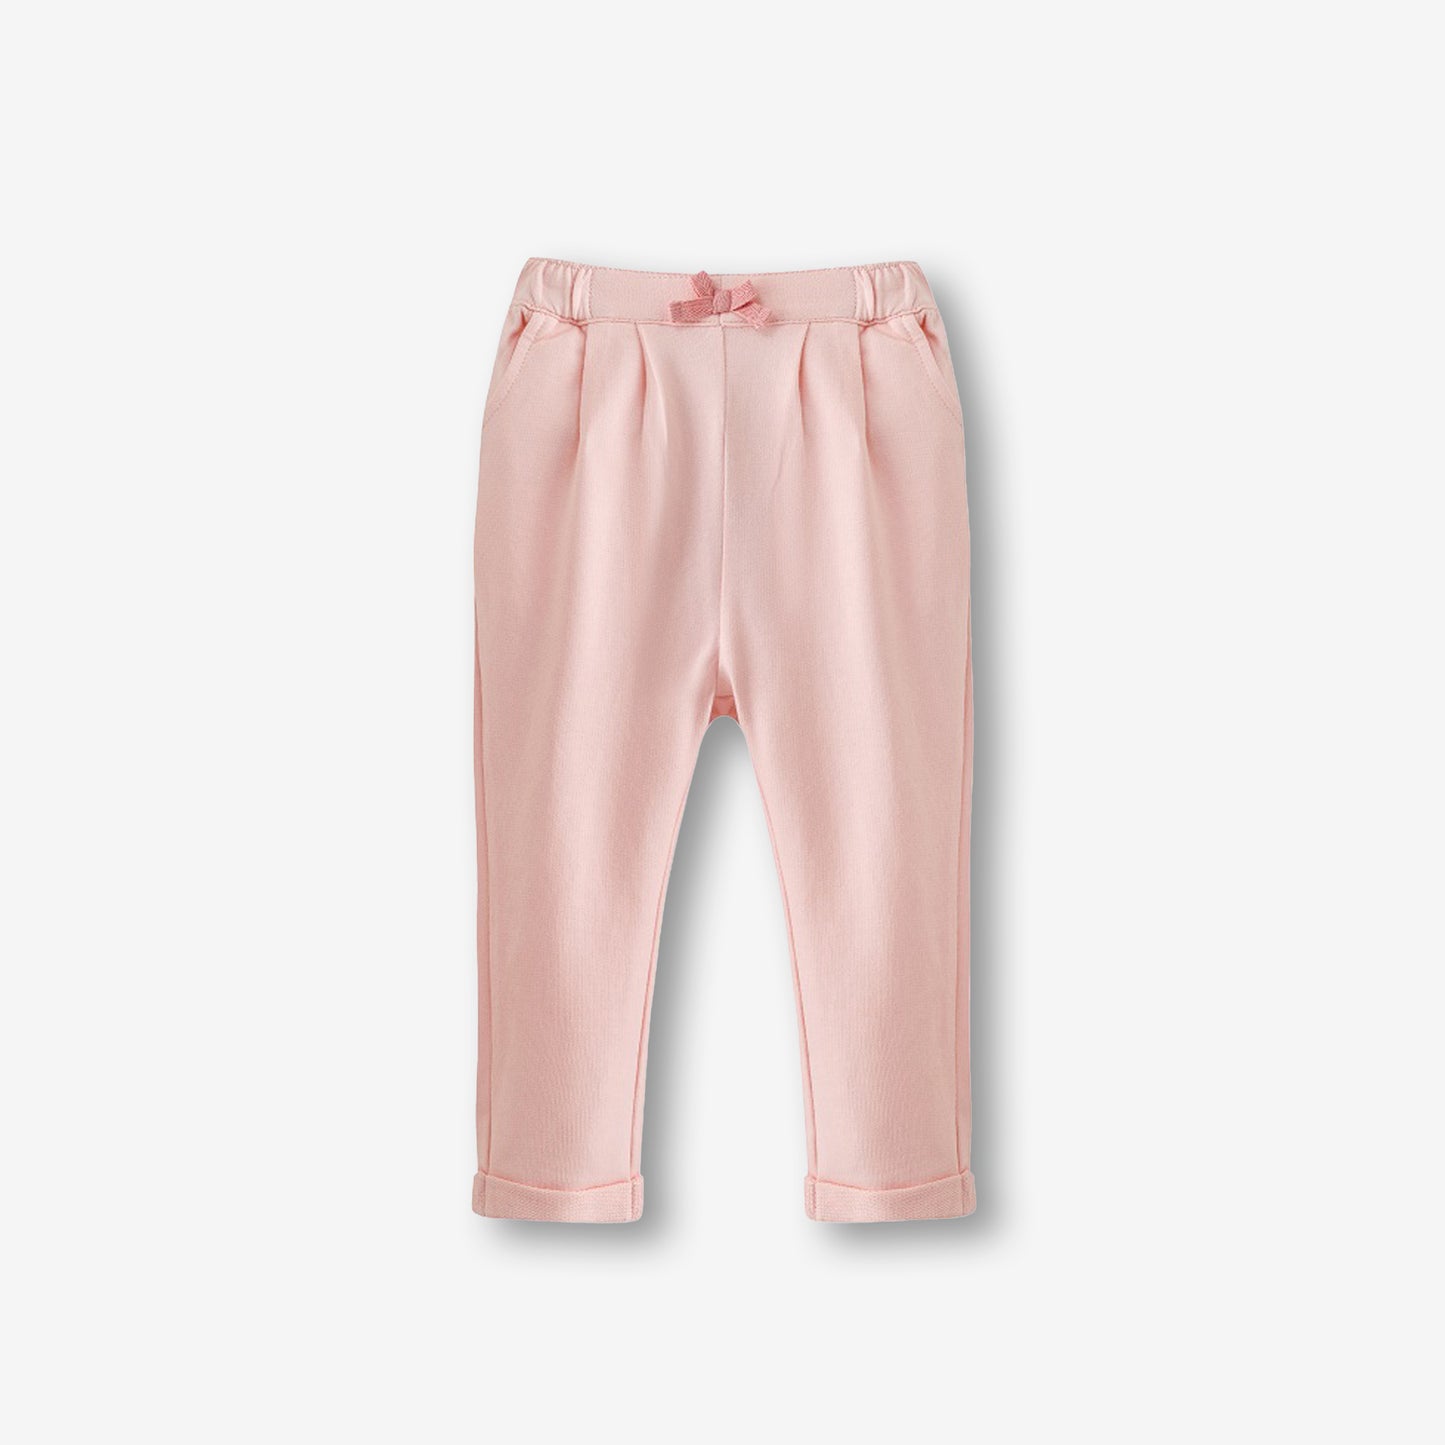 針織長褲-淺粉紅色2